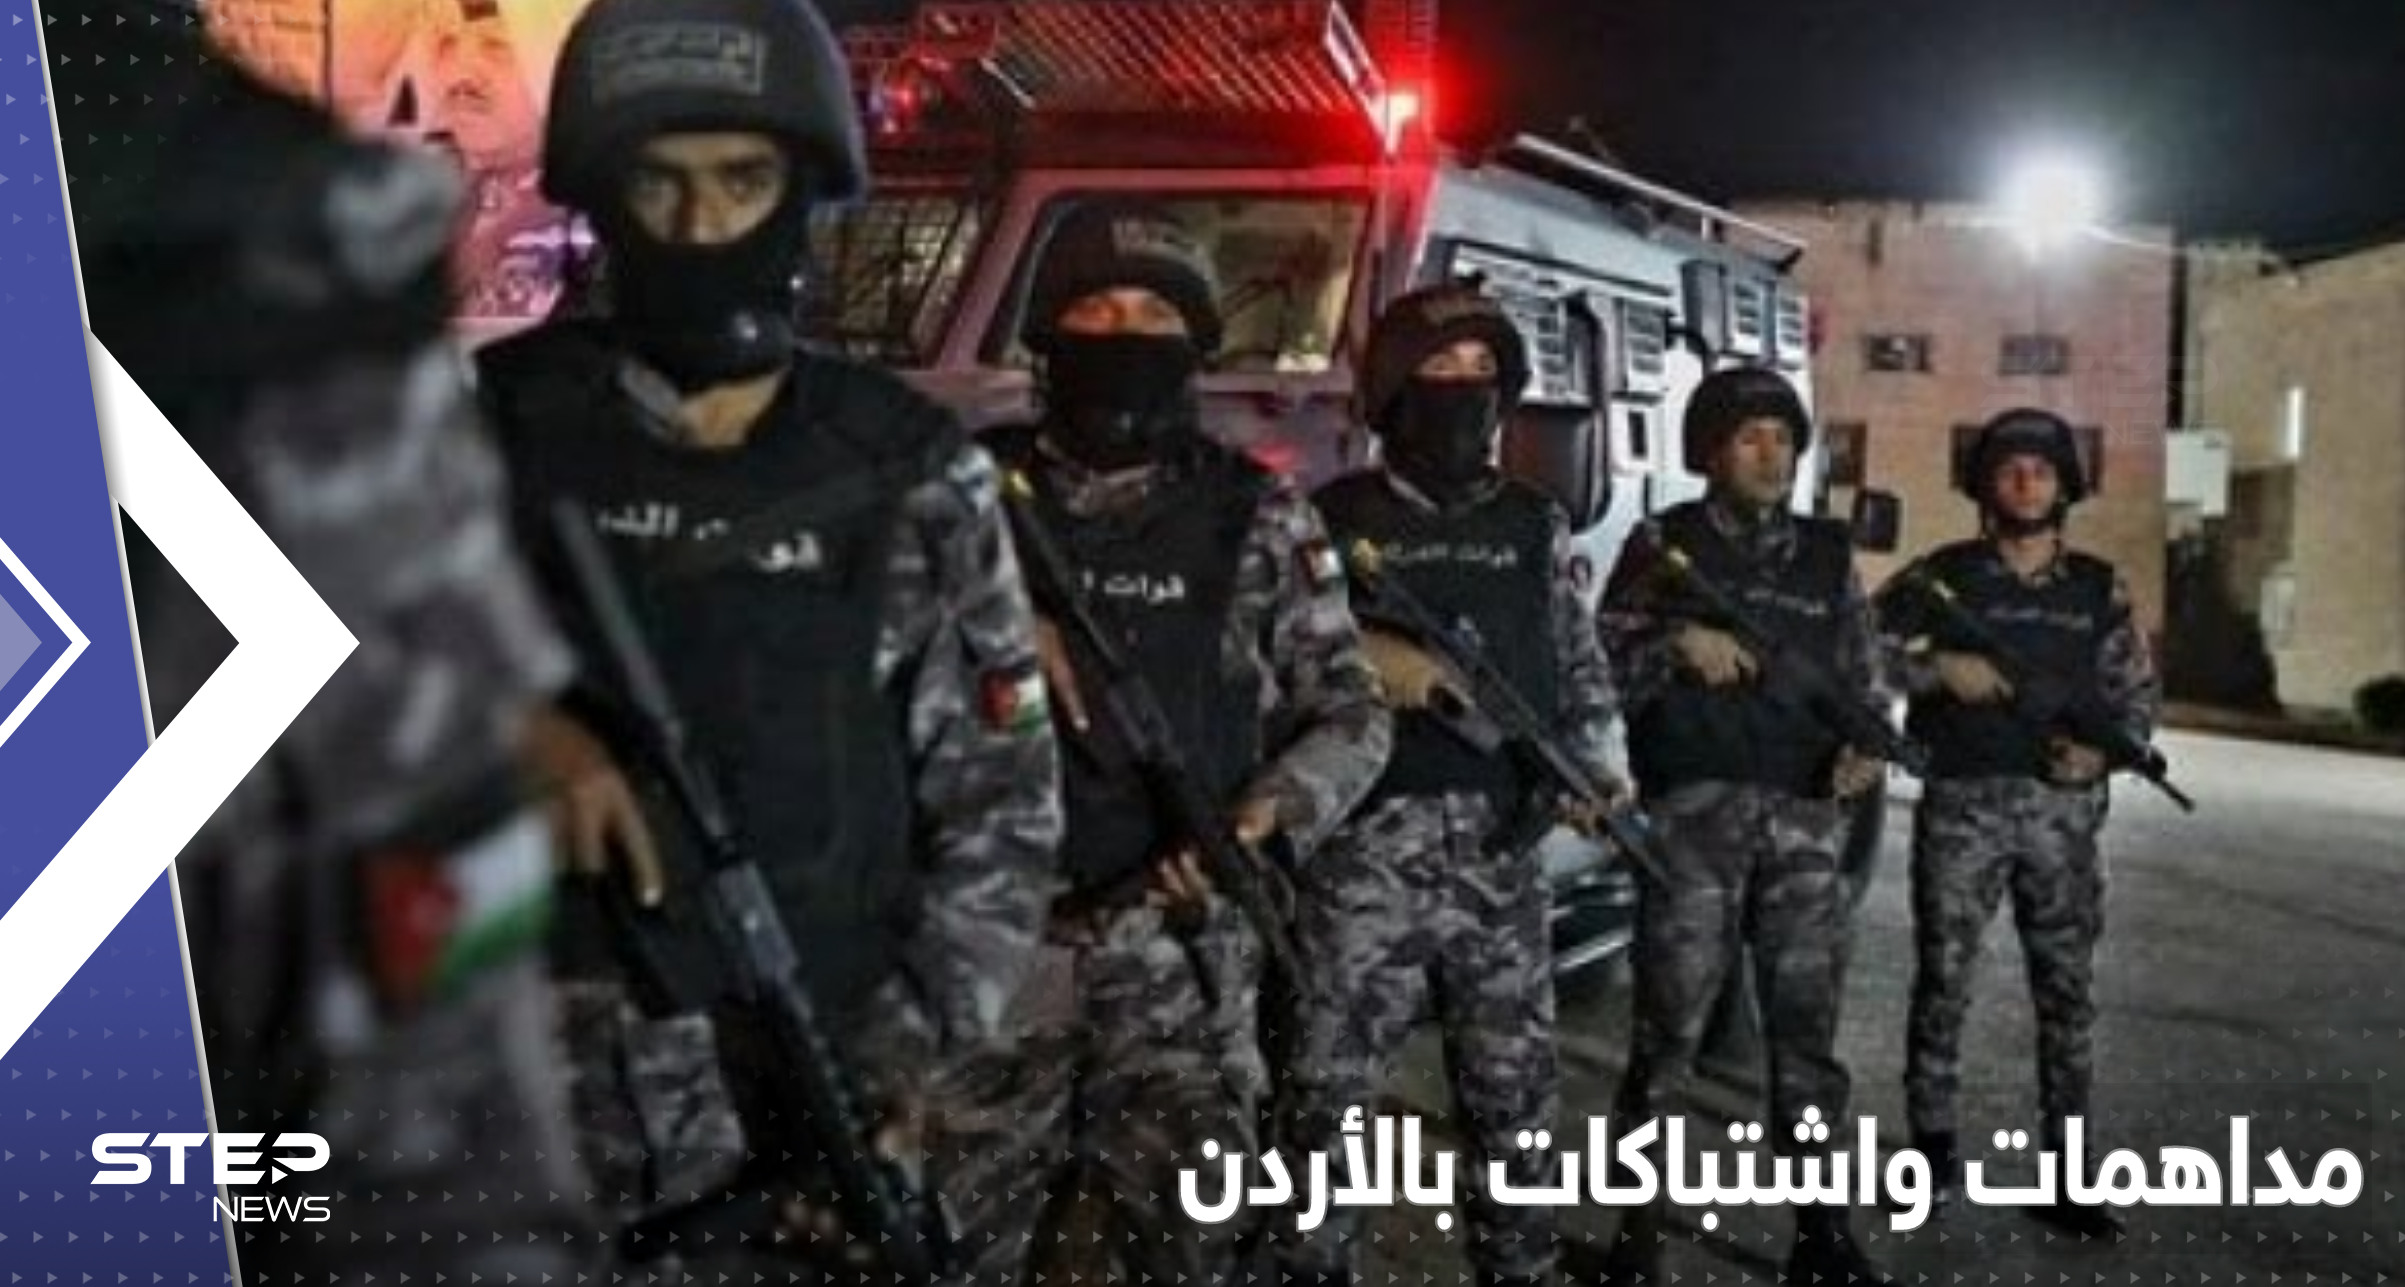 الأمن الأردني يكشف تفاصيل مداهمة "خلية معان" وآخر لحظات "قاتل الدلابيح"